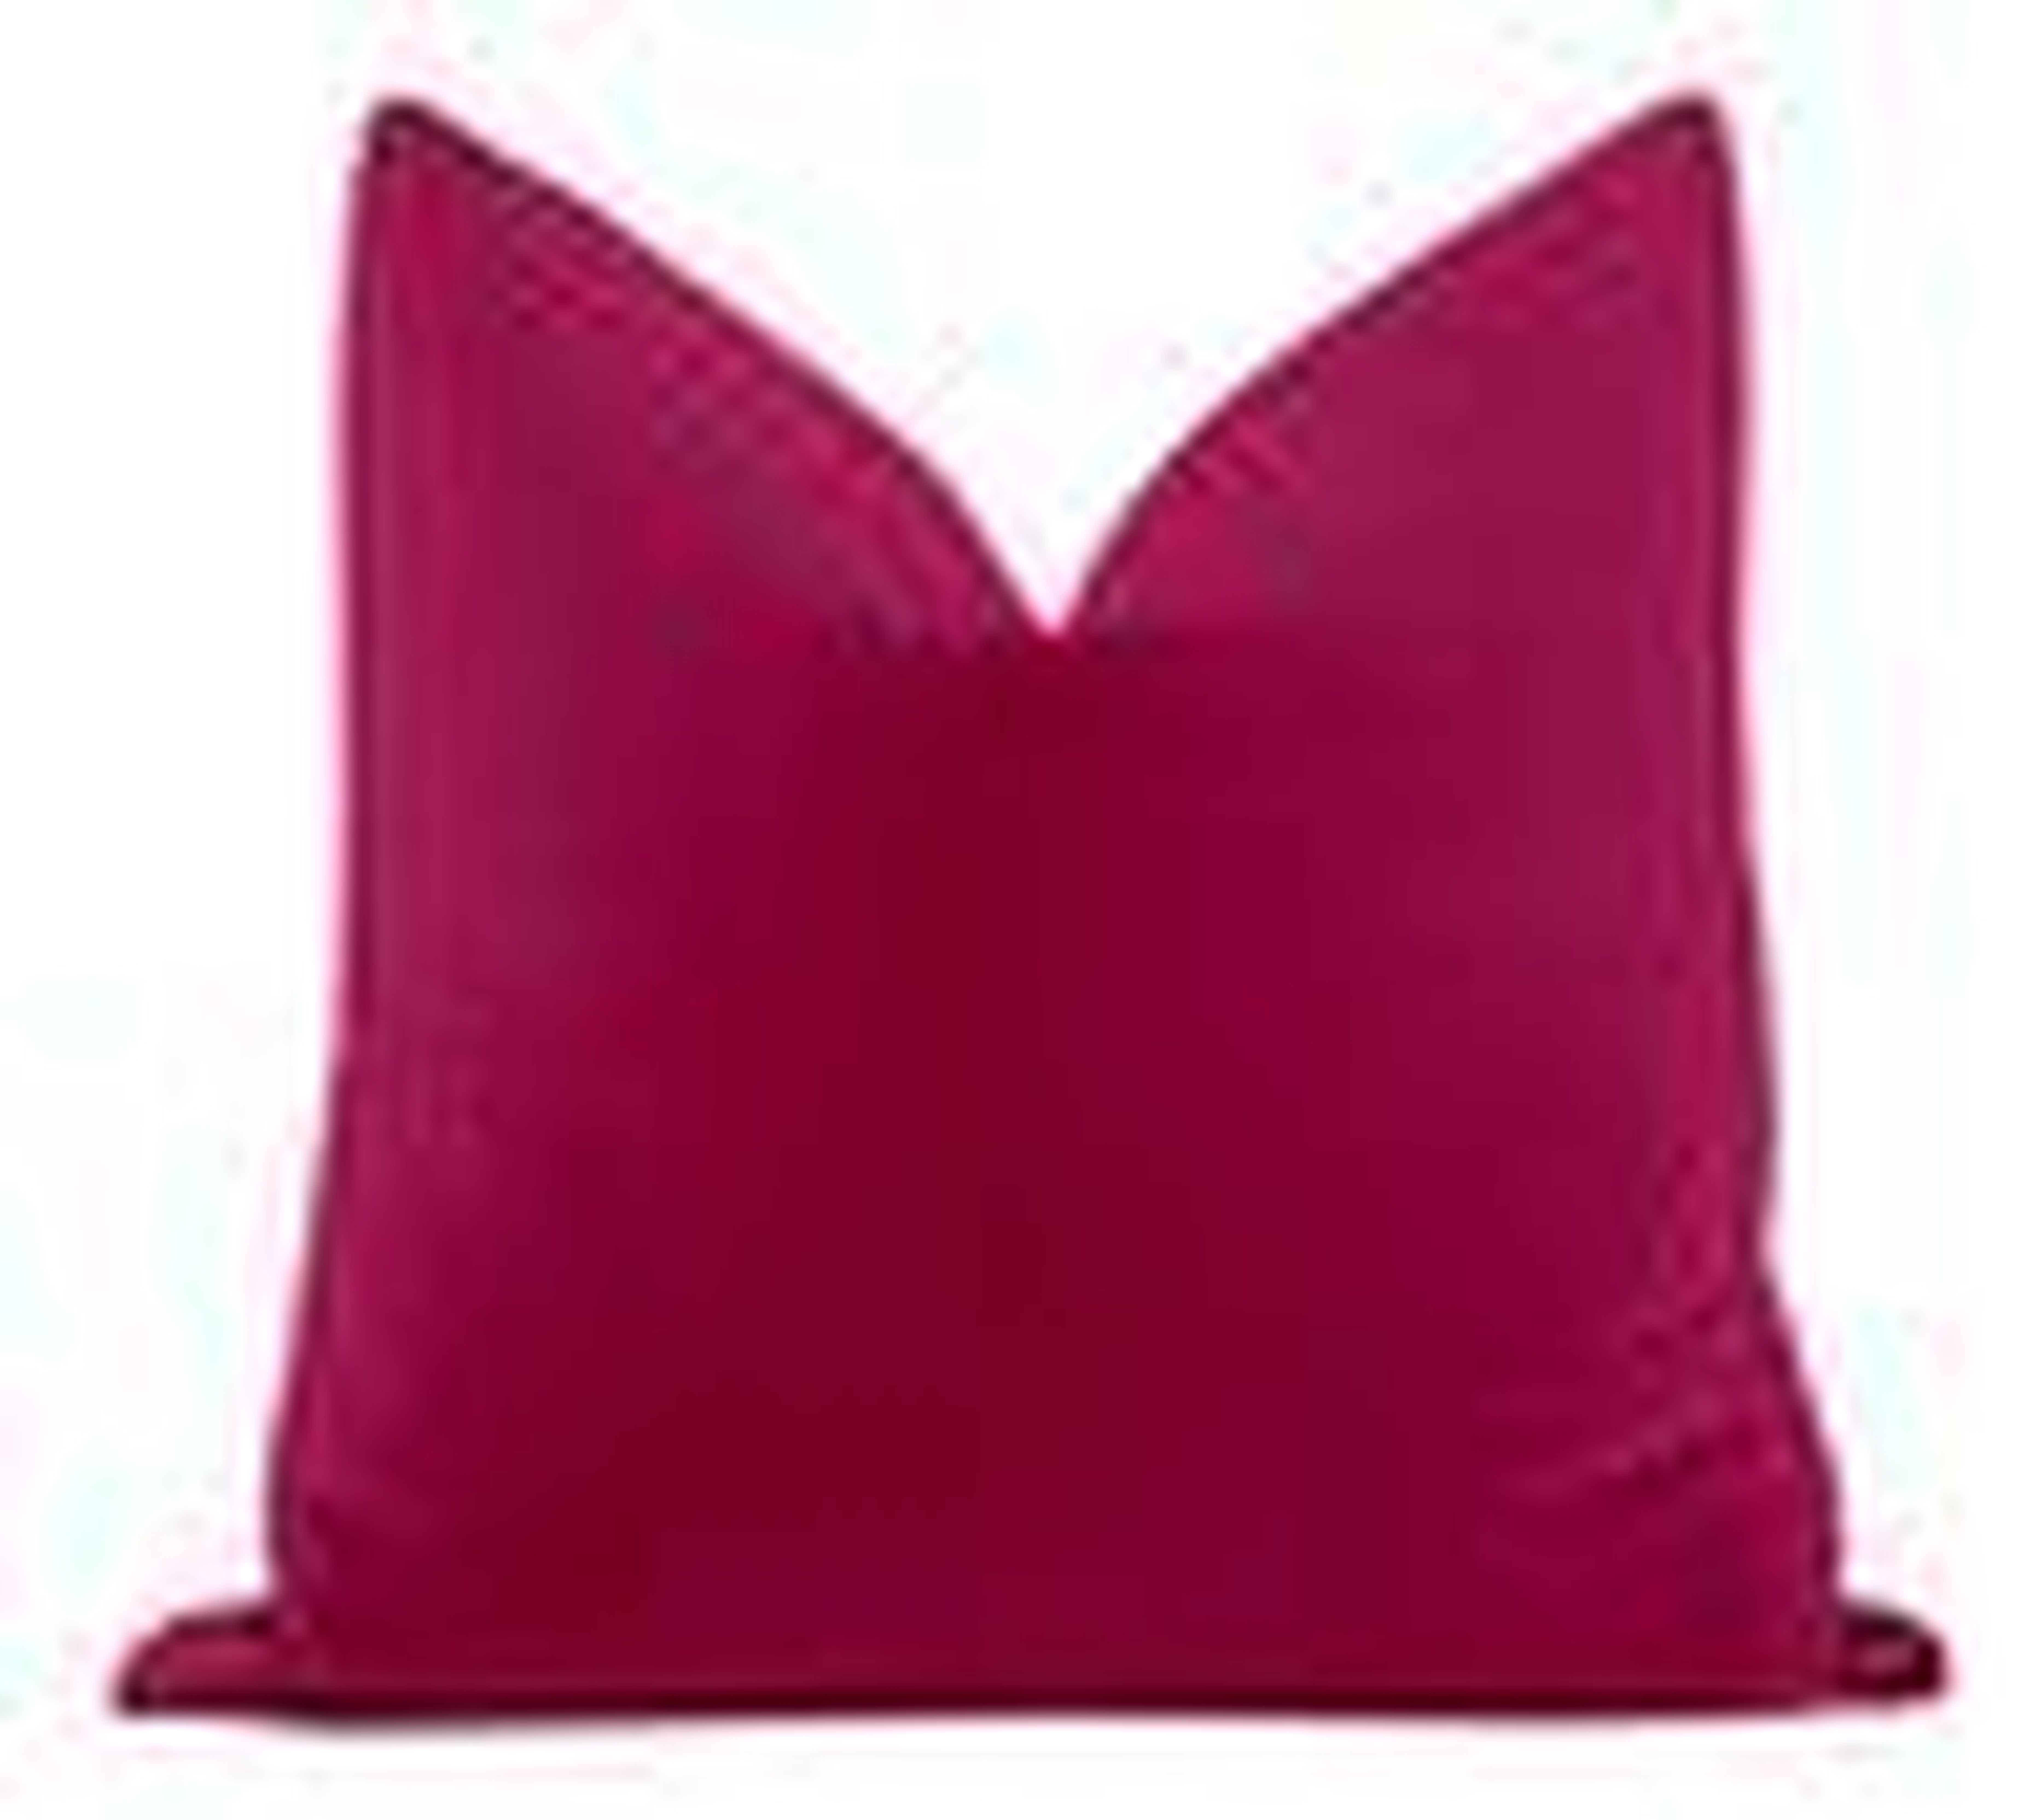 Studio Velvet Pillow Cover, Magenta, 20" x 20" - Little Design Company